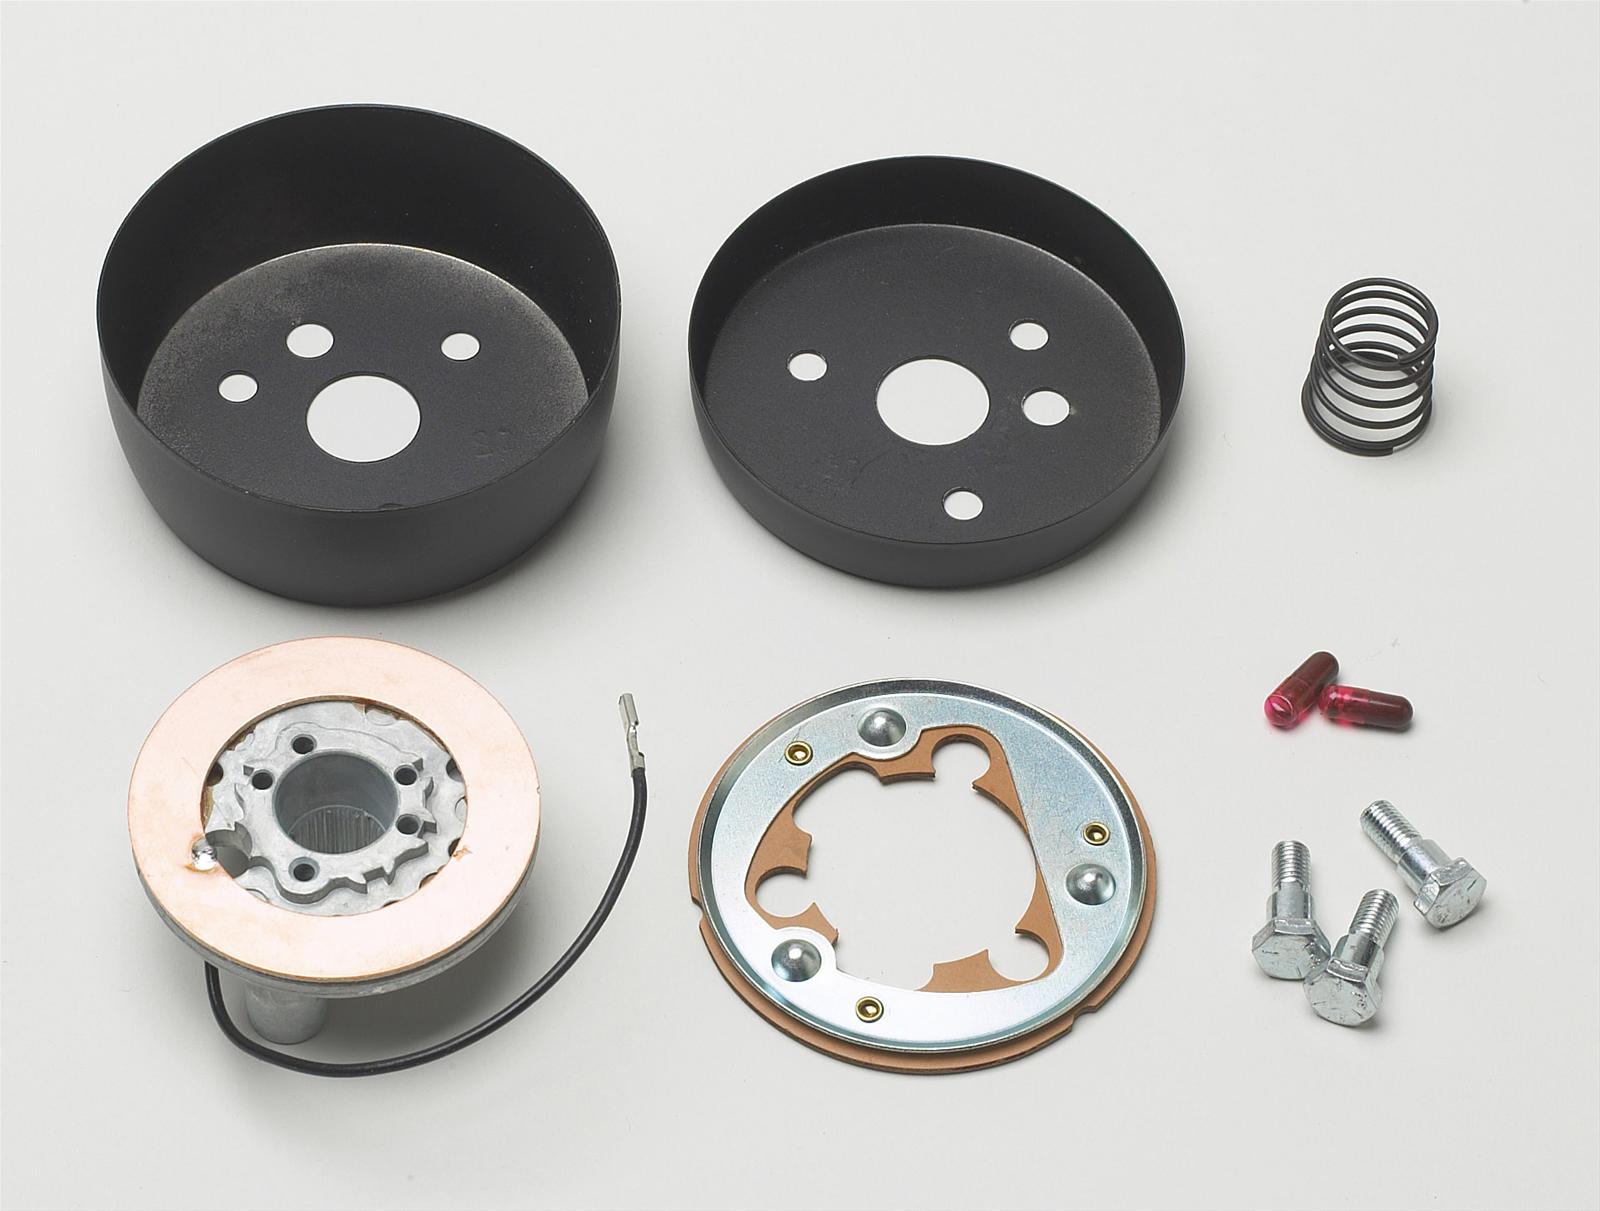 TRW Steering Wheel. Steering Wheel Hub for Opel Corsa b. Walwer z50 grinding Wheel Adapters. Fl0000007903825 installation Kit. Install kit